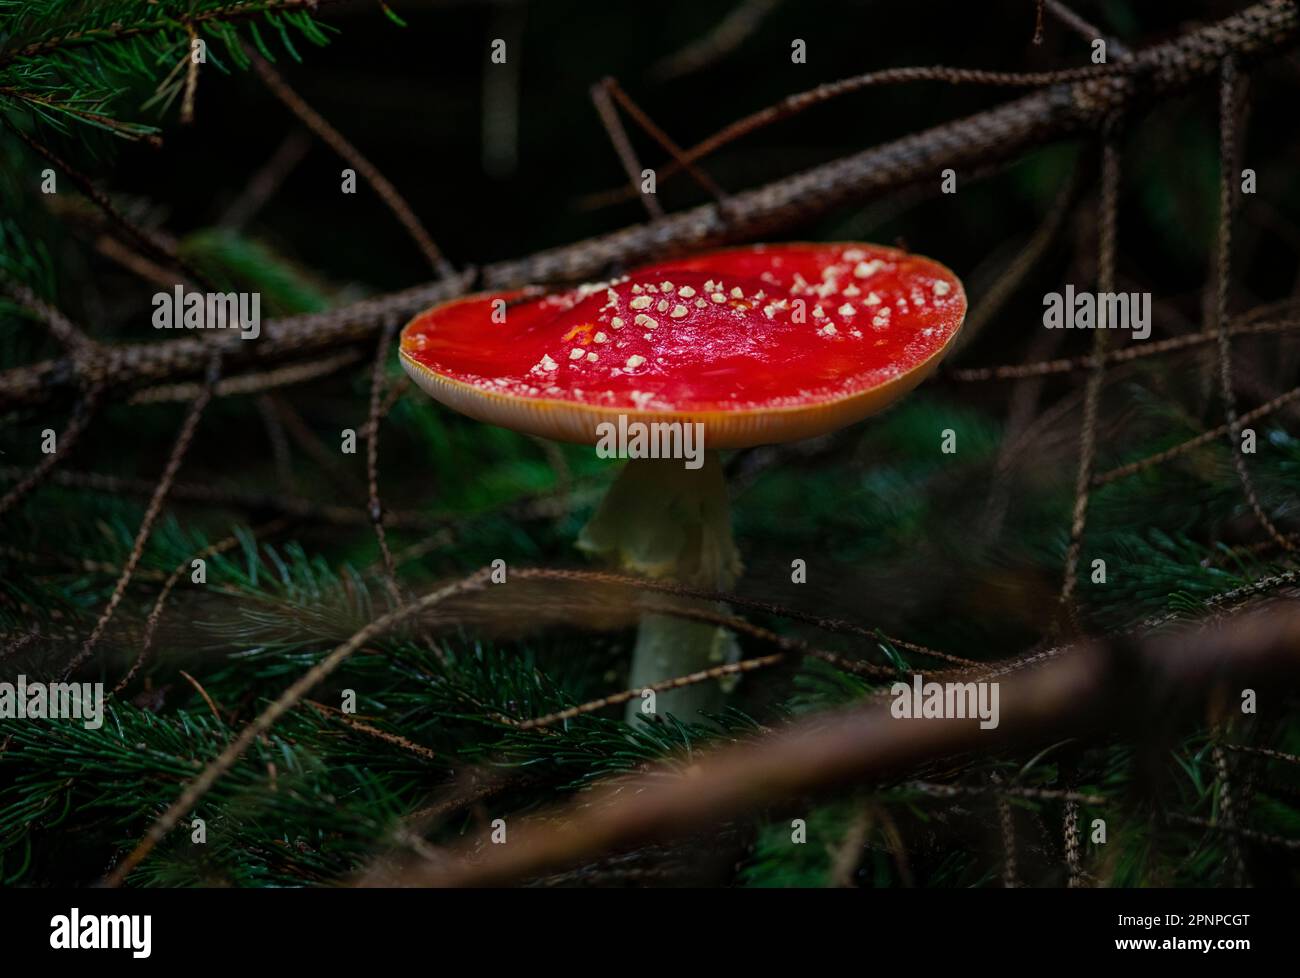 Survolez les champignons agariques qui poussent sur le fond de la forêt à Gloucestershire en automne. Champignon poussant dans le matériau en décomposition sur le terrain boisé Banque D'Images